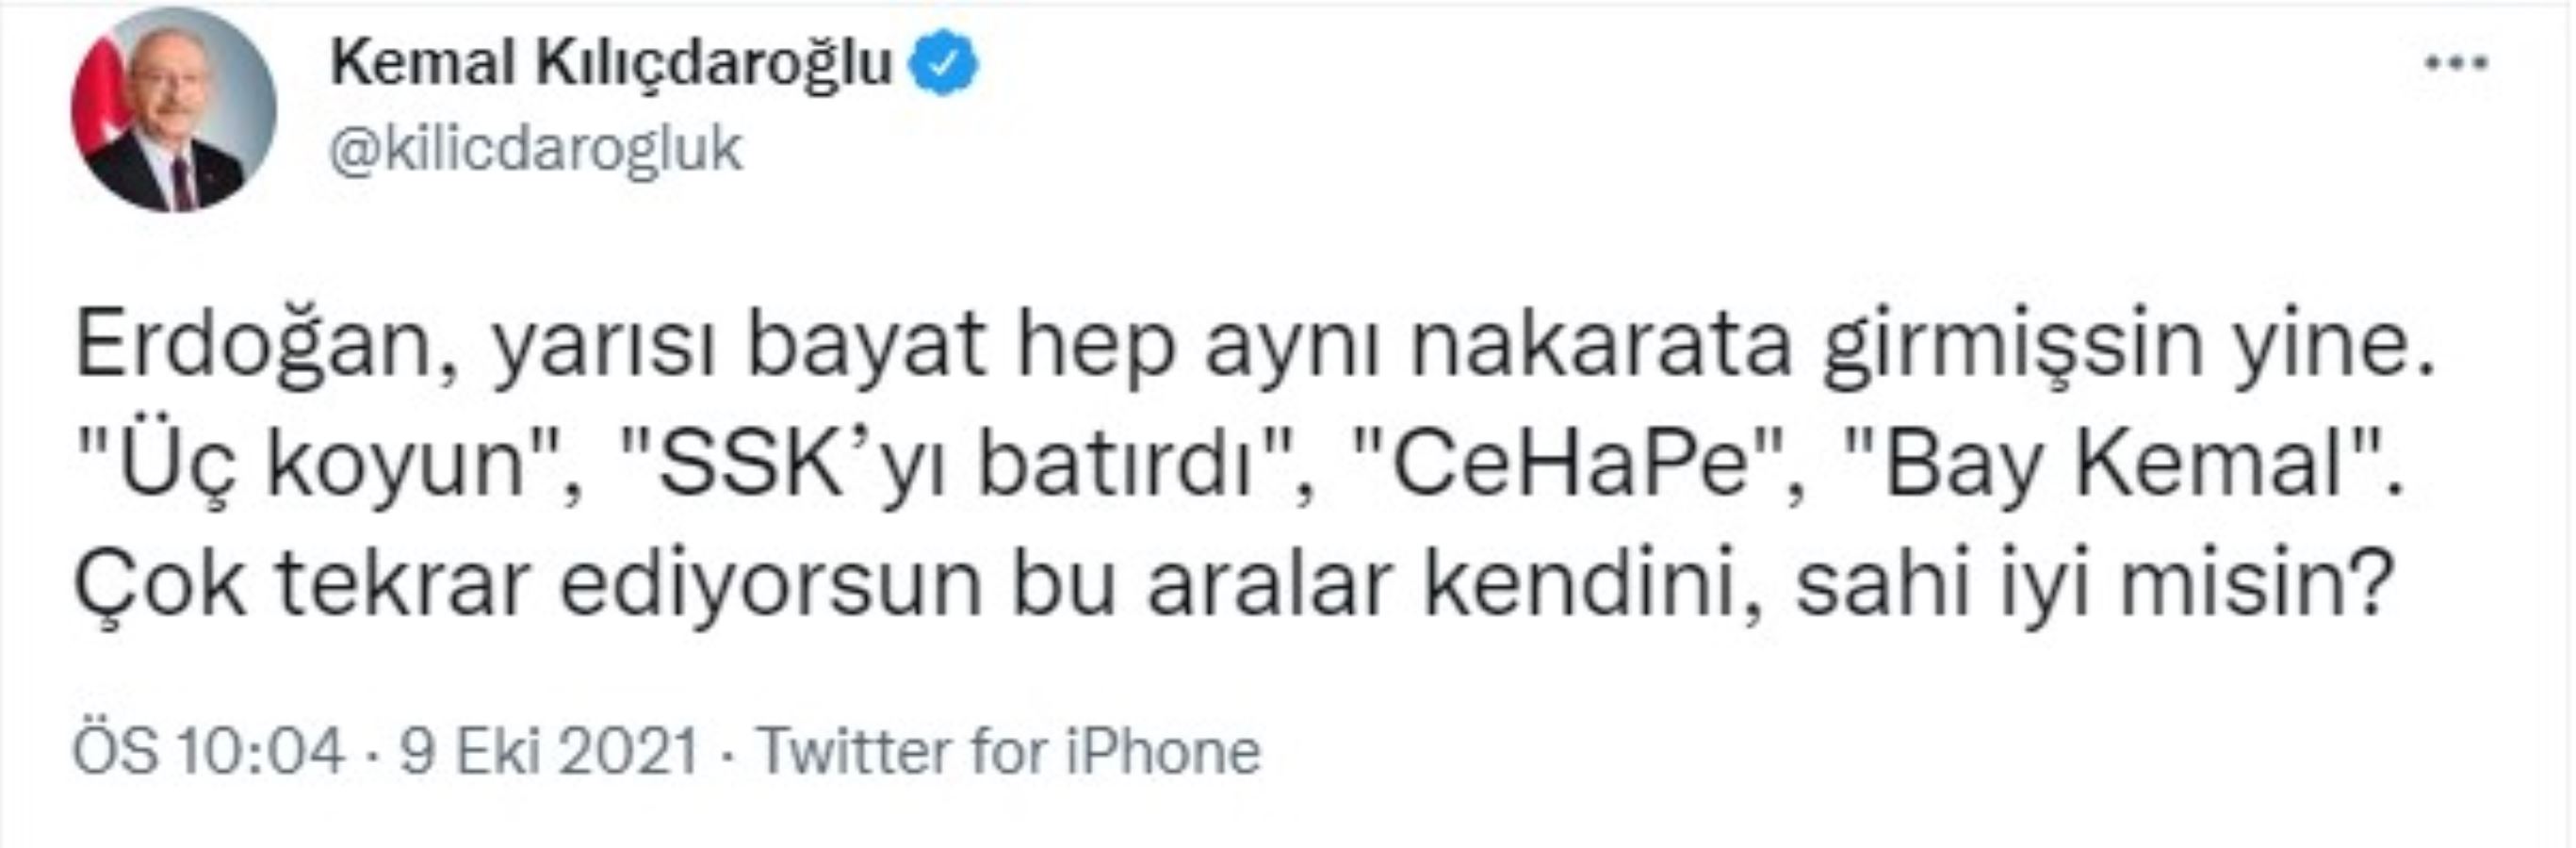 Kemal Kılıçdaroğlu'ndan Erdoğan'a 'SSK' yanıtı: Sahi iyi misin?